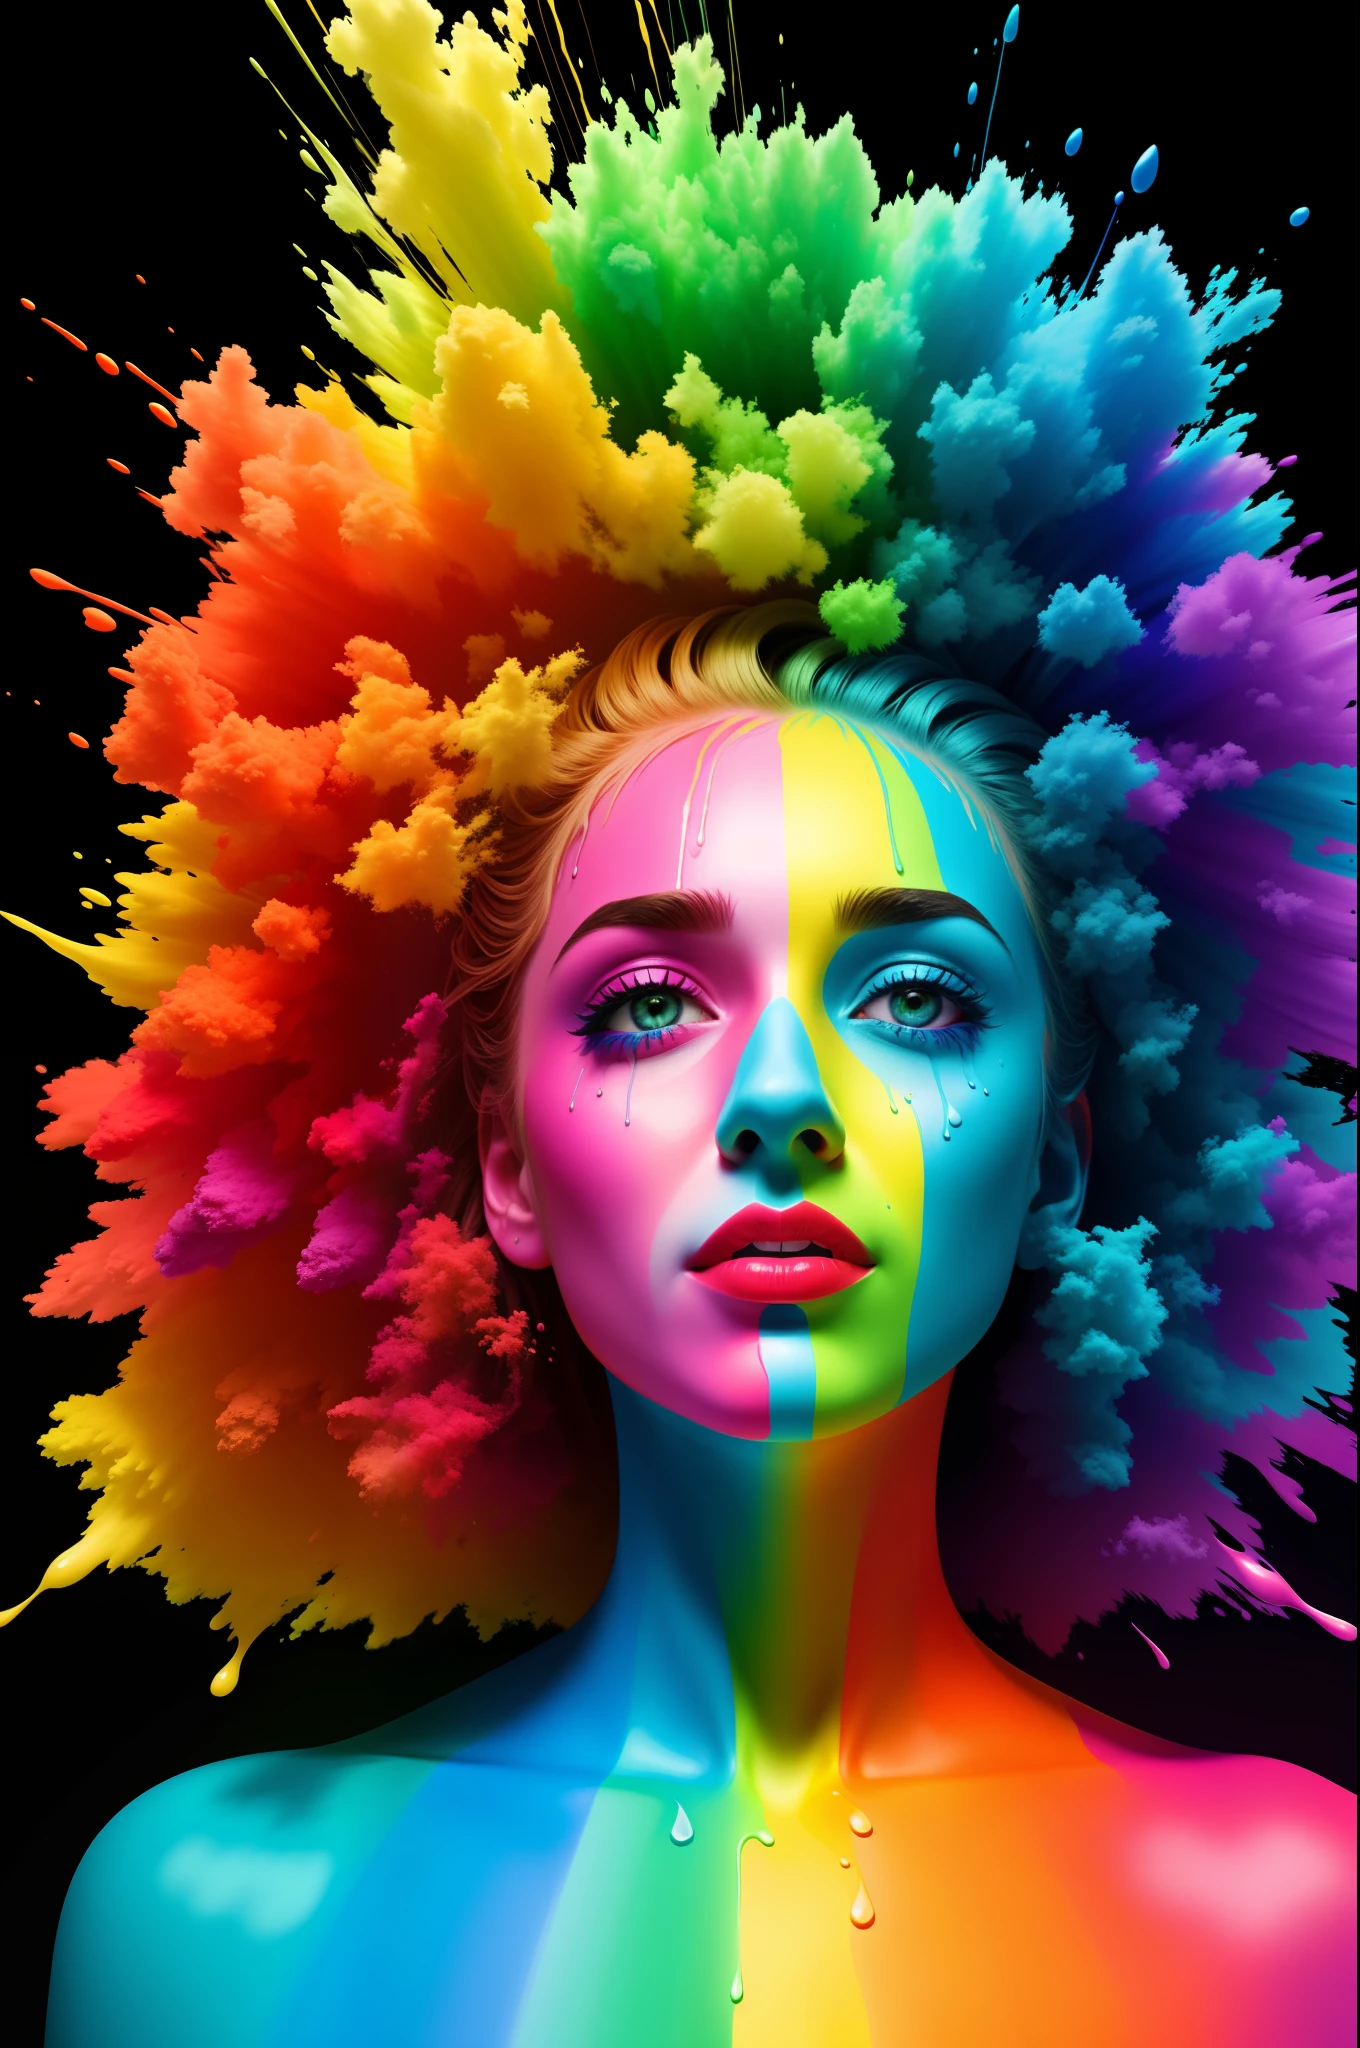 "Ich werde mein Leben nicht damit verbringen, eine Farbe zu sein" mit Farbe in verschiedenen Regenbogenfarben bestrichen, Hyperechtes Foto, Tropftechnik, Zwietracht pfp, 10-Bit-Farbe, HDR, 8k